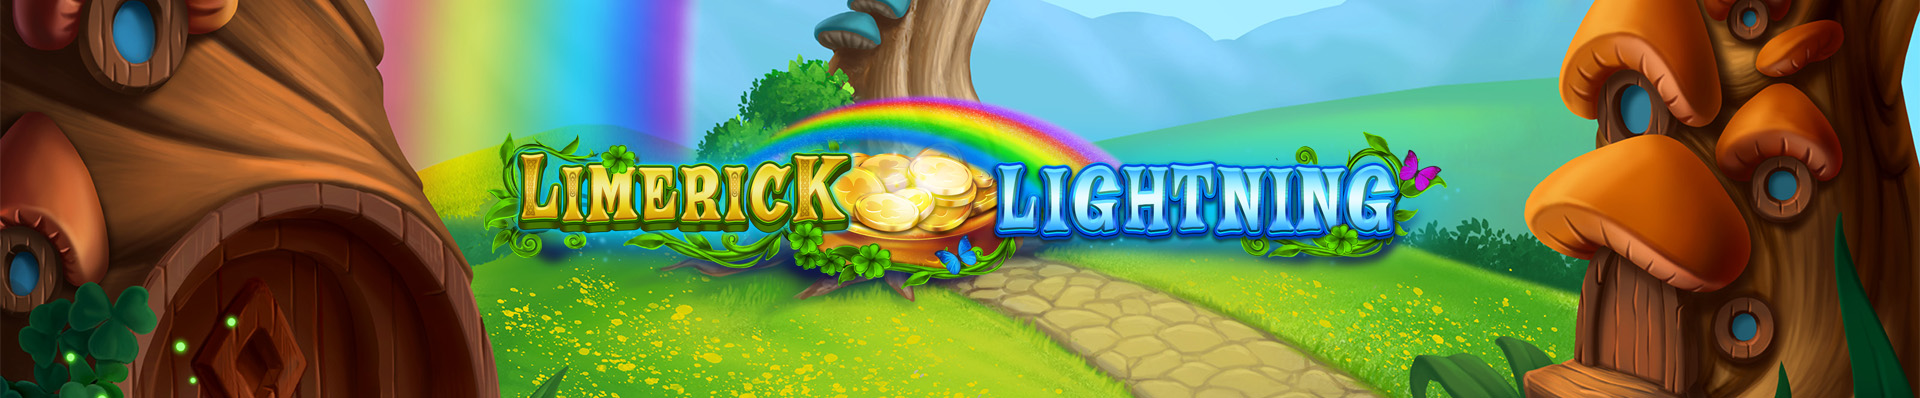 Limerick Lightning Slot Logo